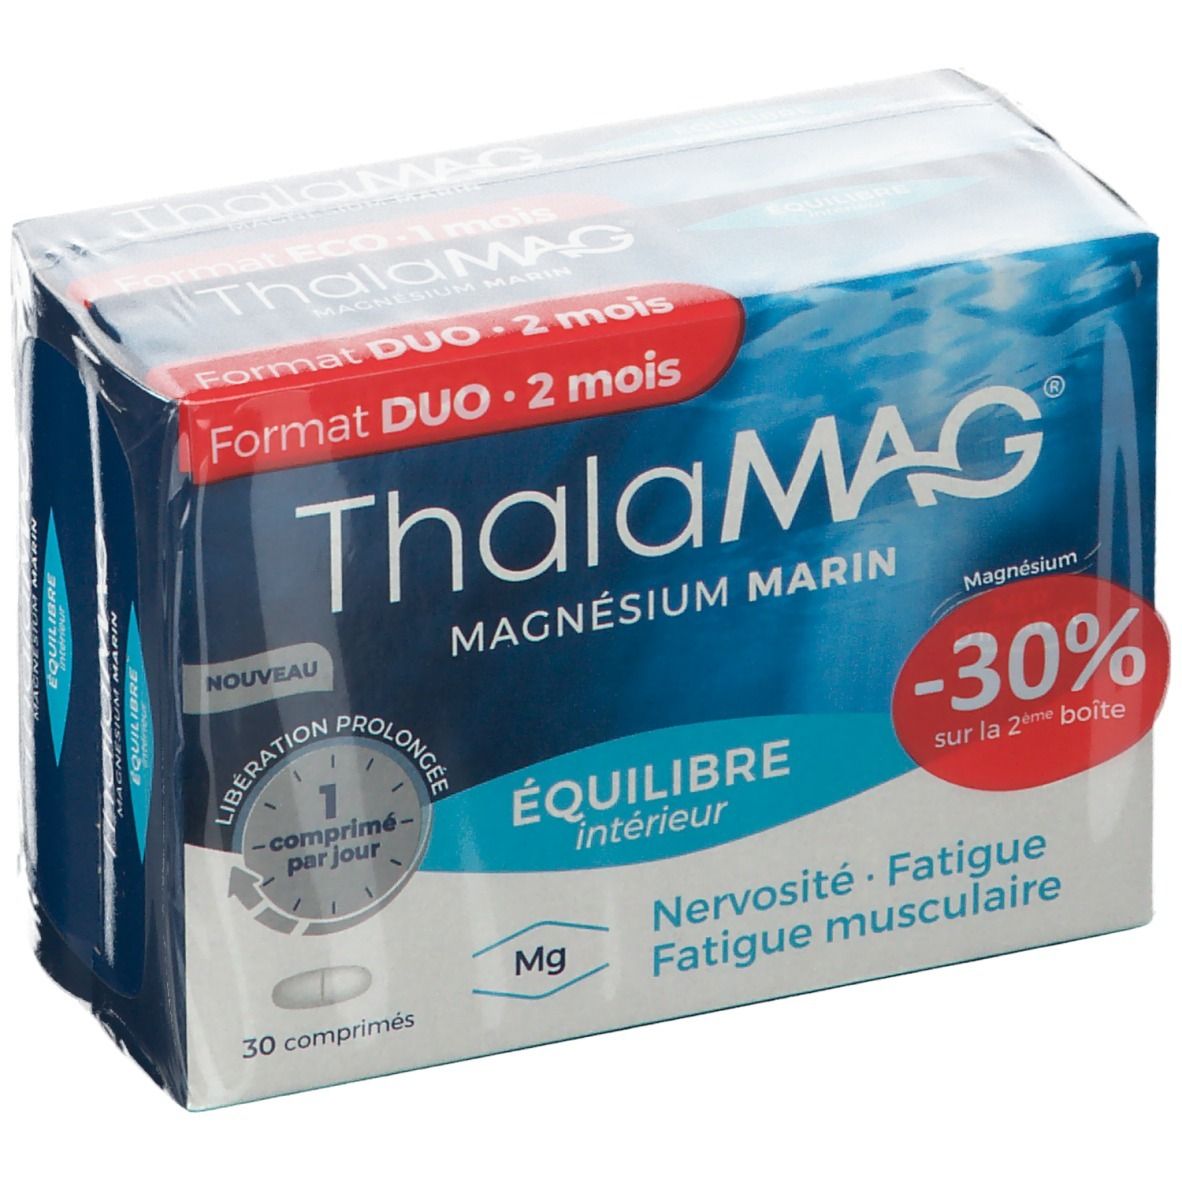 ThalaMAG® Magnésium Marin Équilibre Intérieur